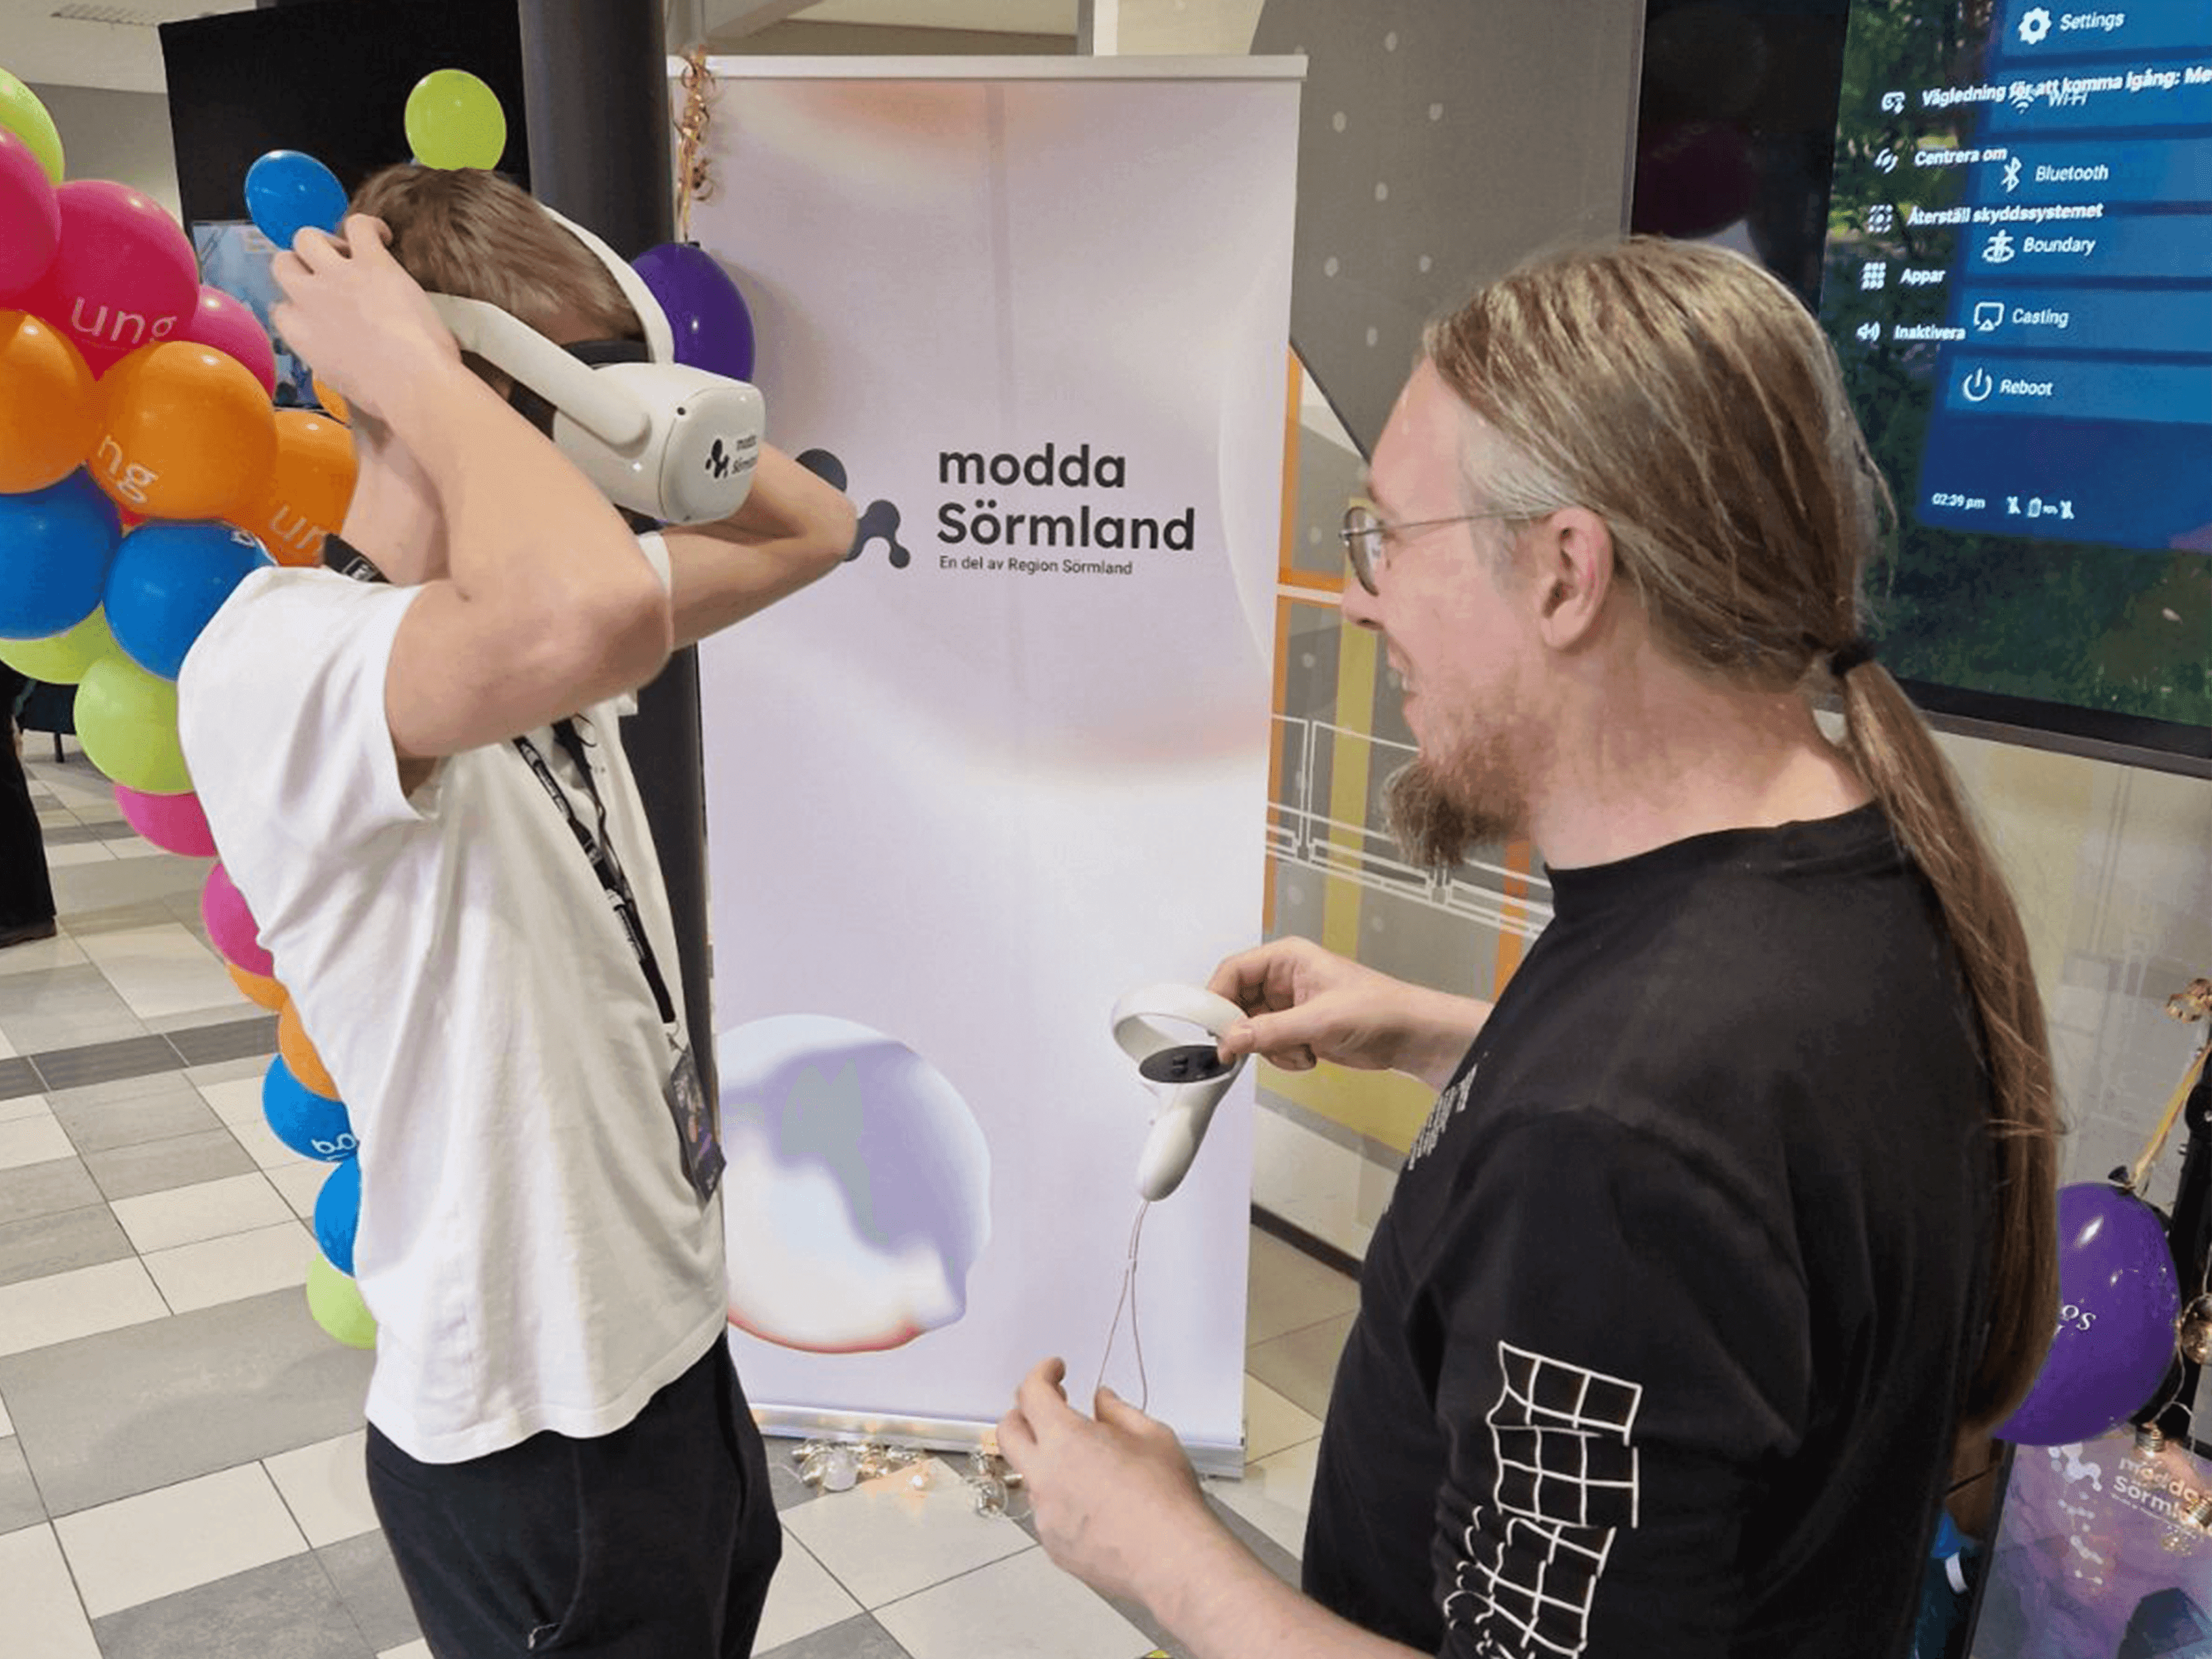 Petter Danielsson hjälper ett barn med VR headset